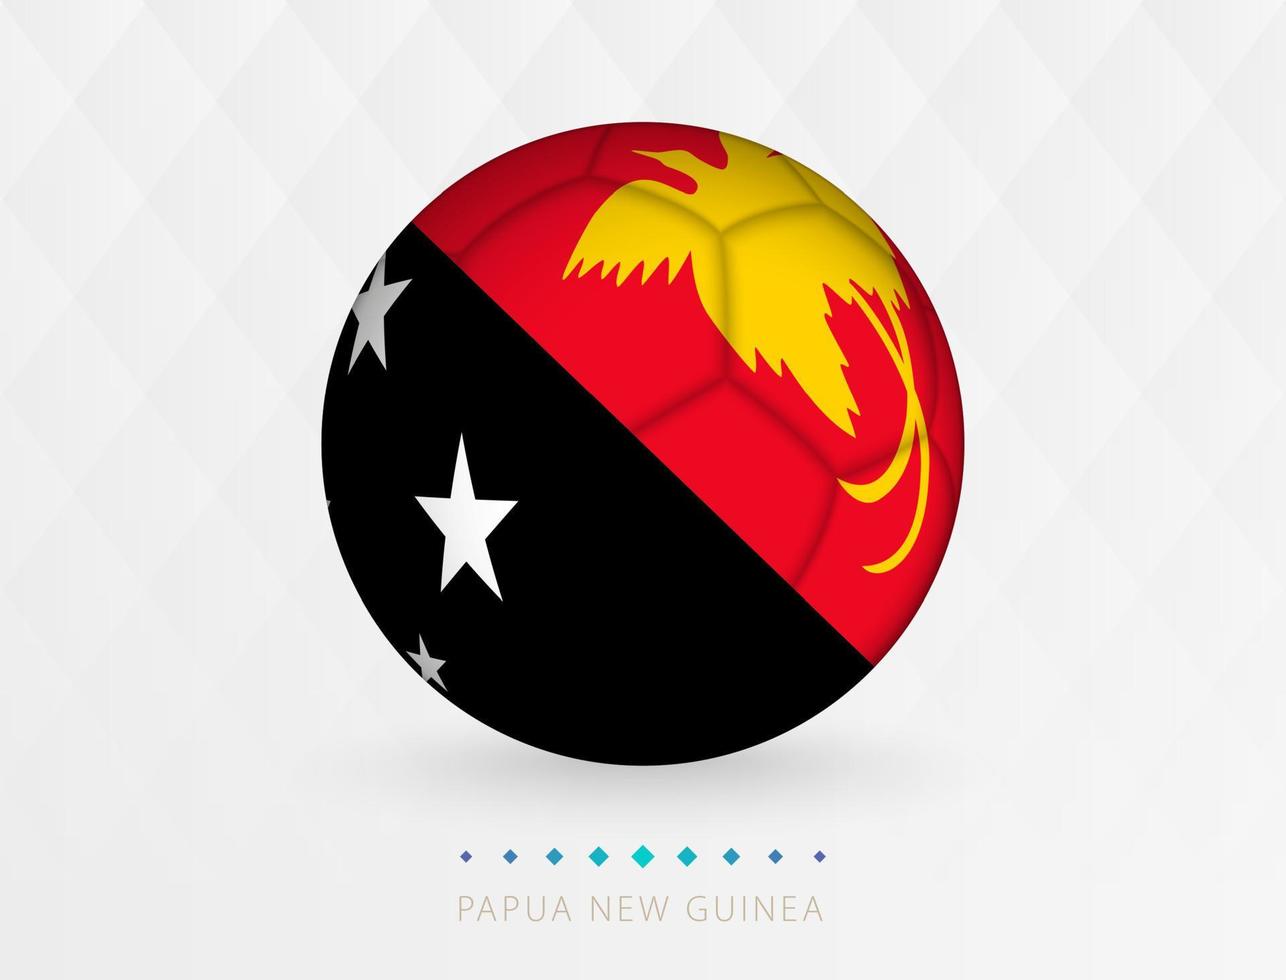 Amerikaans voetbal bal met Papoea nieuw Guinea vlag patroon, voetbal bal met vlag van Papoea nieuw Guinea nationaal team. vector